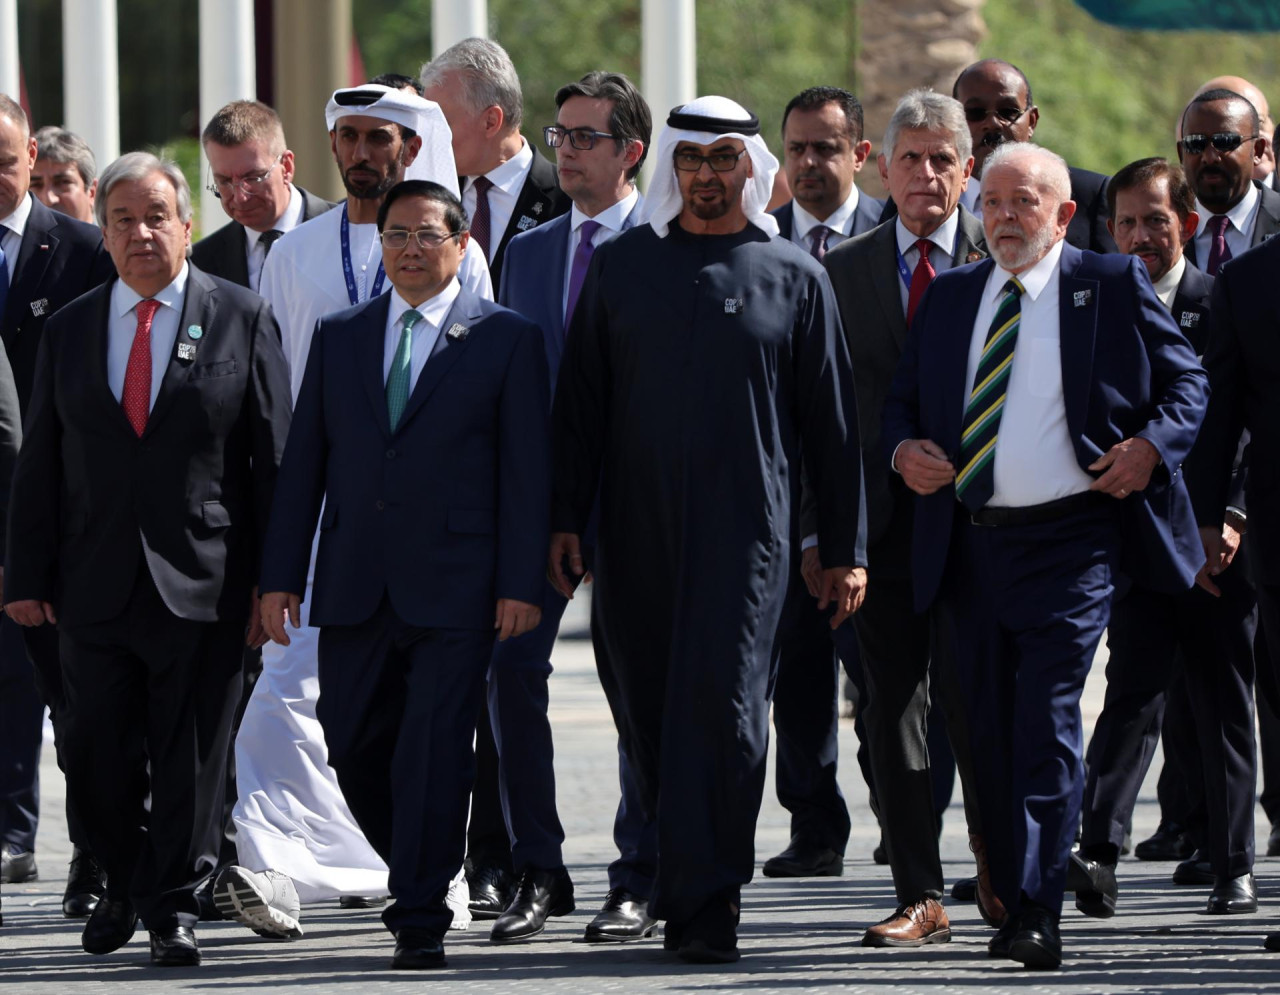 El presidente de Brasil, Lula da Silva, presente en la COP28 en Dubai. Foto: EFE.